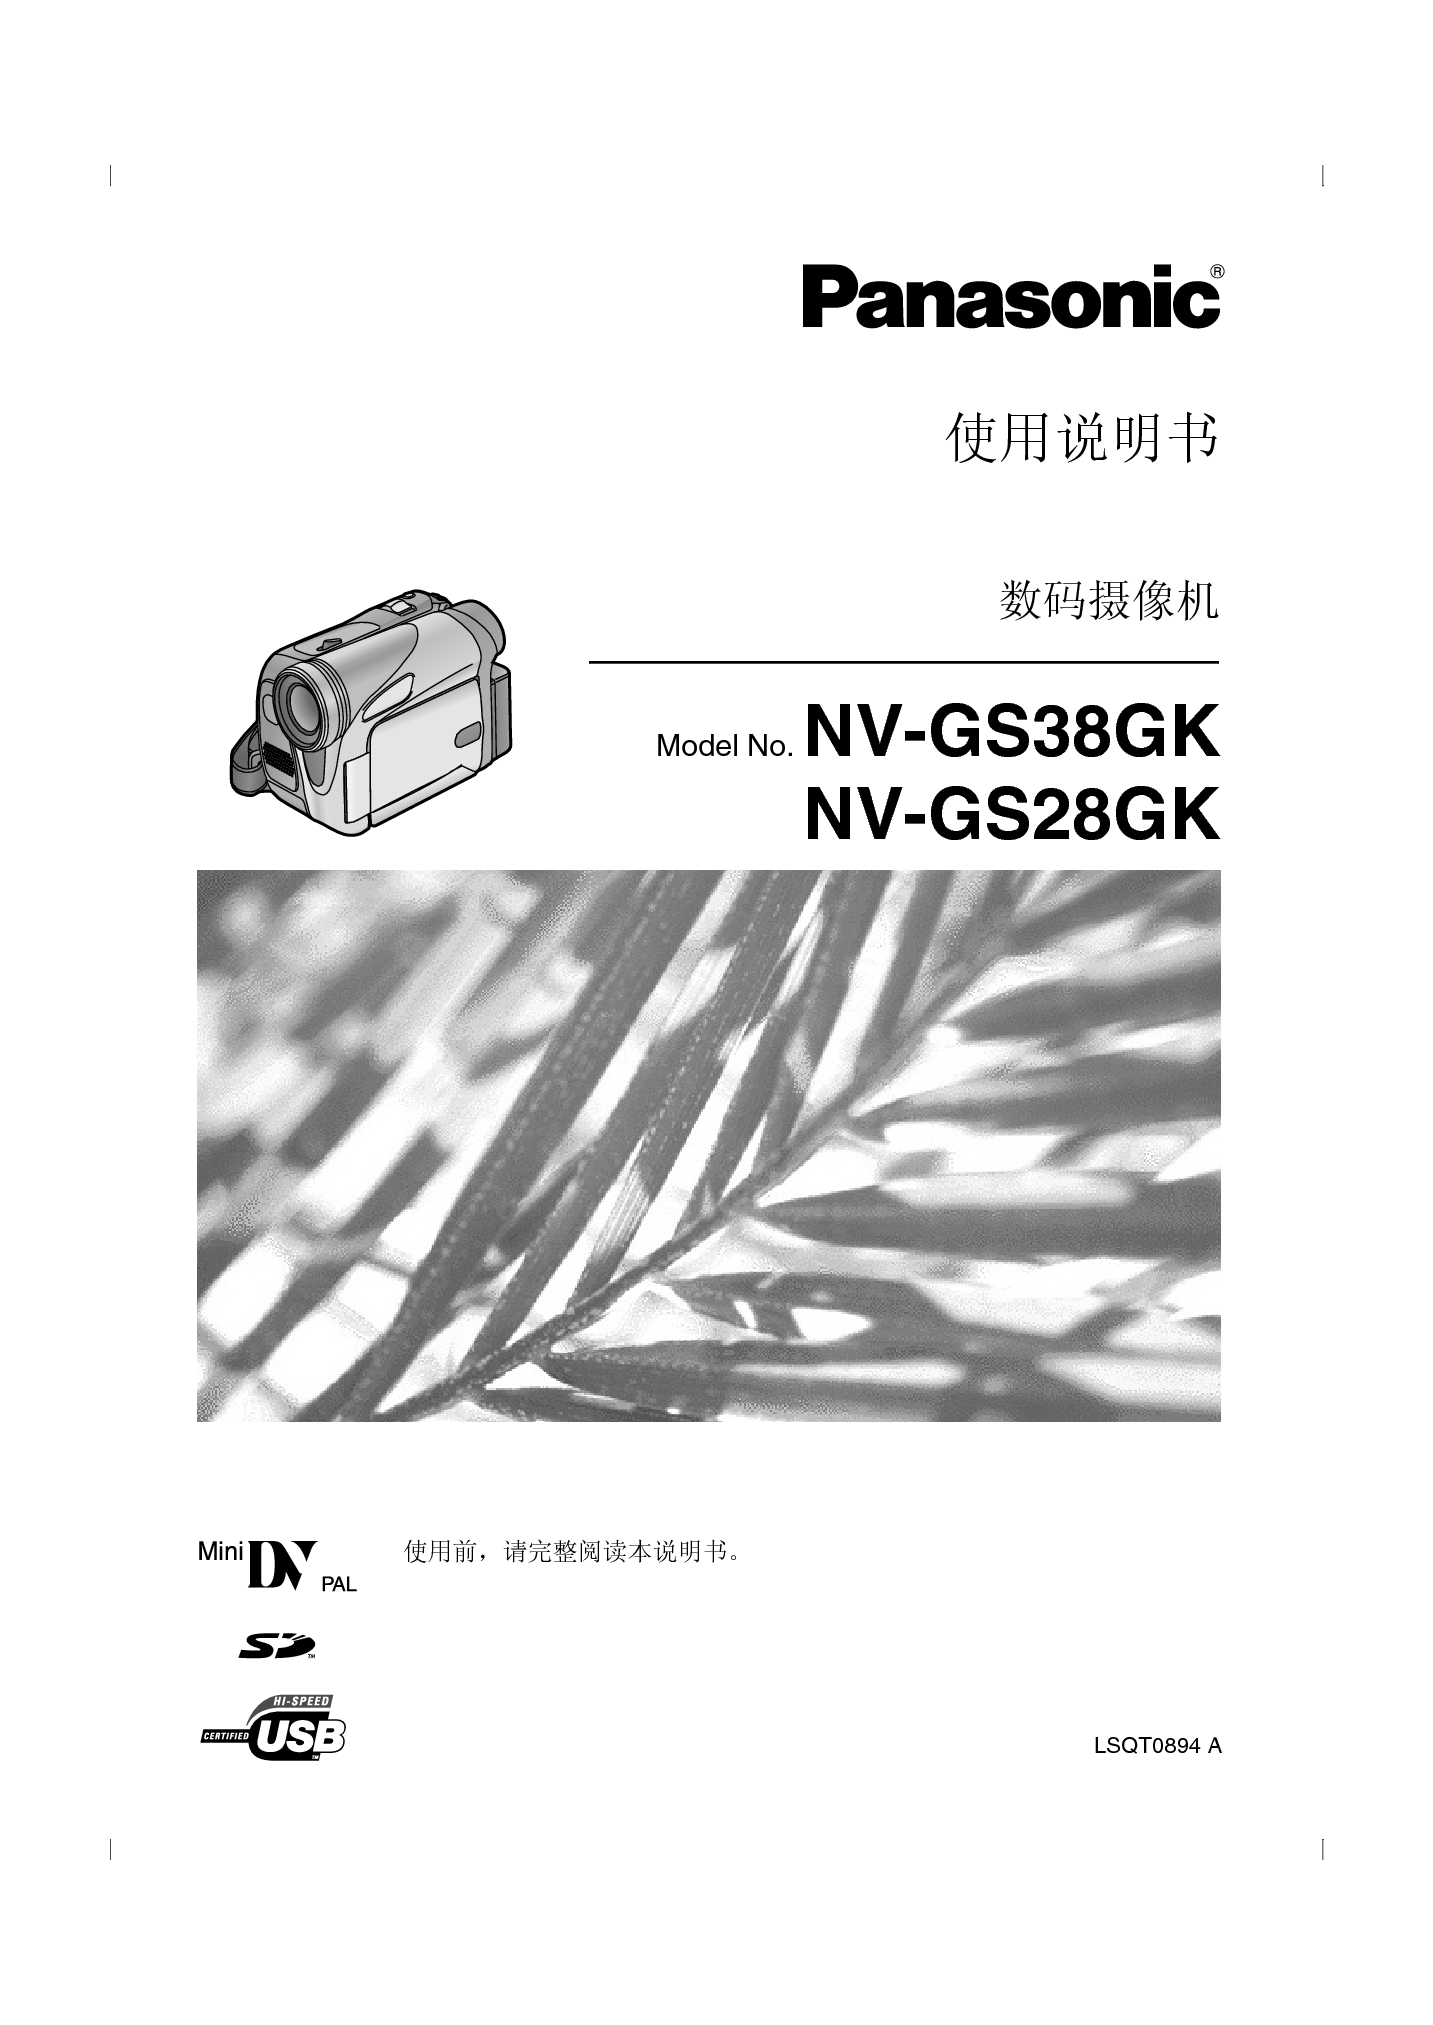 松下 Panasonic NV-GS28GK 说明书 封面